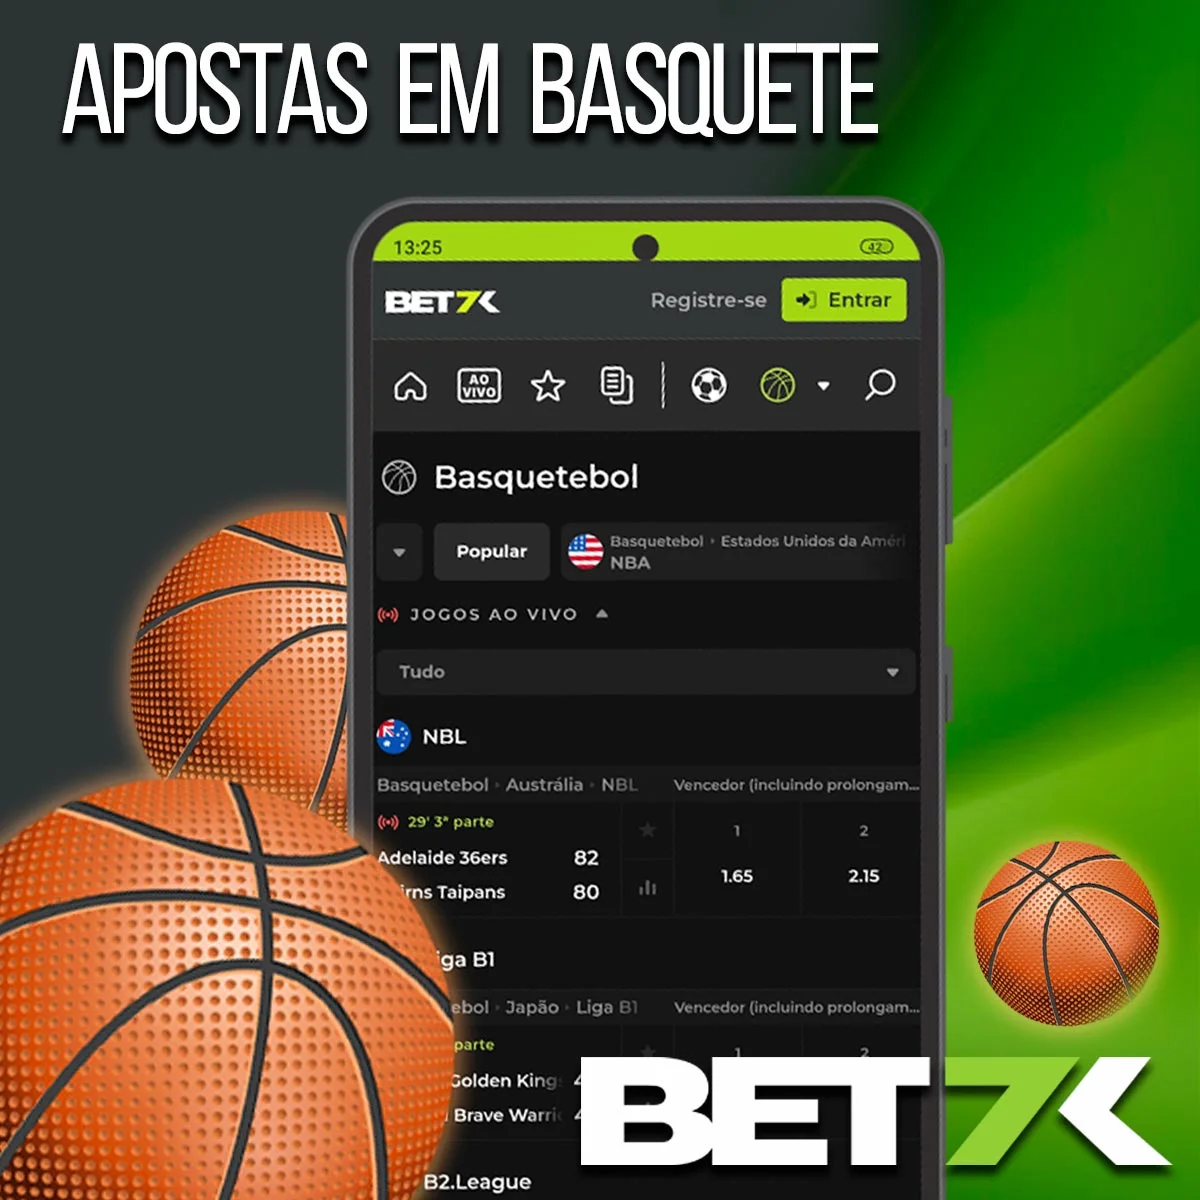 Apostas em basquete na casa de apostas Bet7k no Brasil